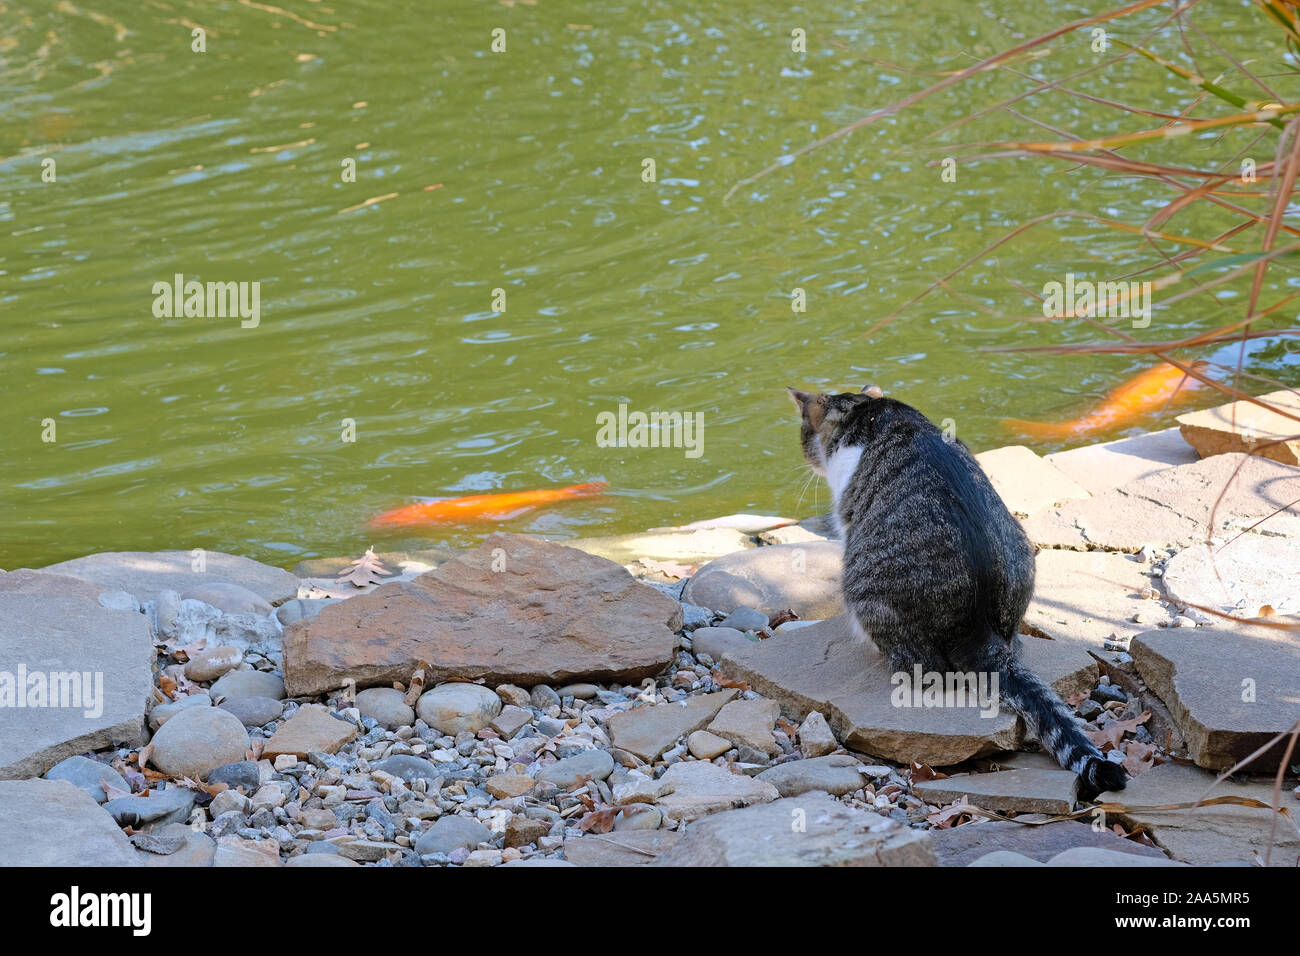 Un chat est assis sur des blocs en pierre près de l'étang. Or les poissons nagent dans l'étang, le chat chasse le poisson. Banque D'Images